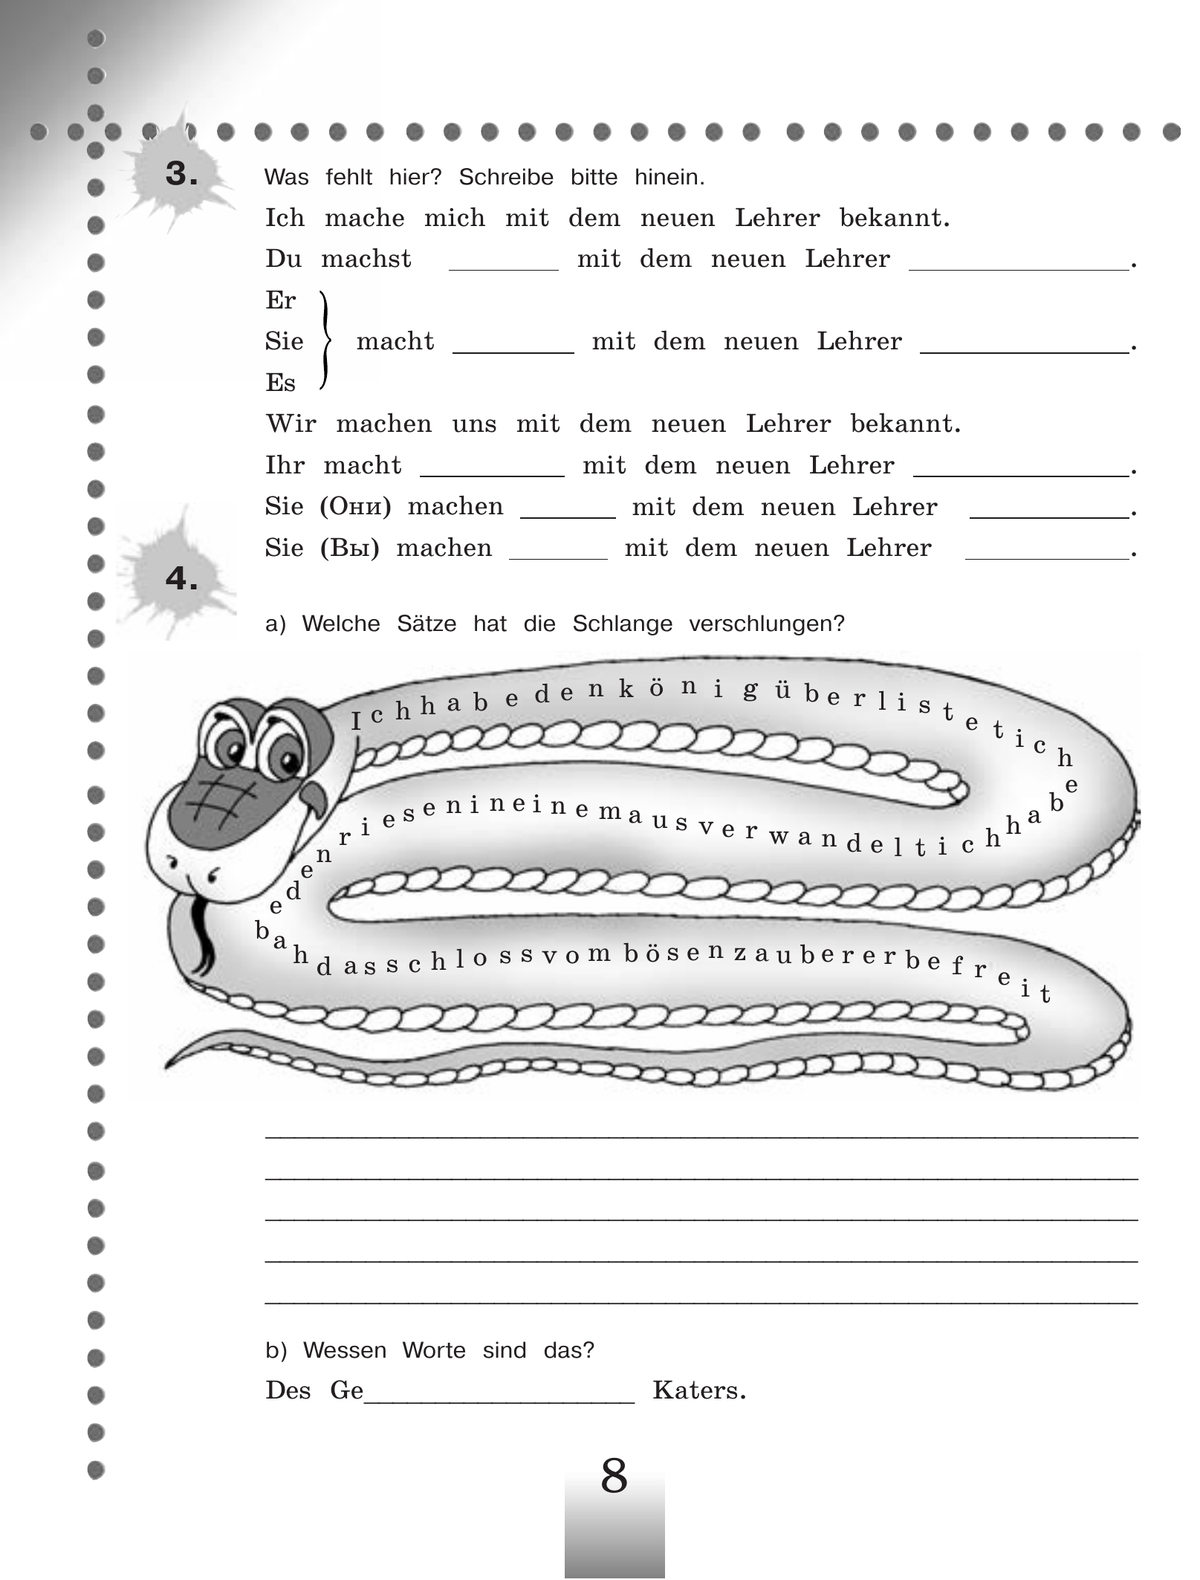 Немецкий язык. Рабочая тетрадь. 5 класс 9